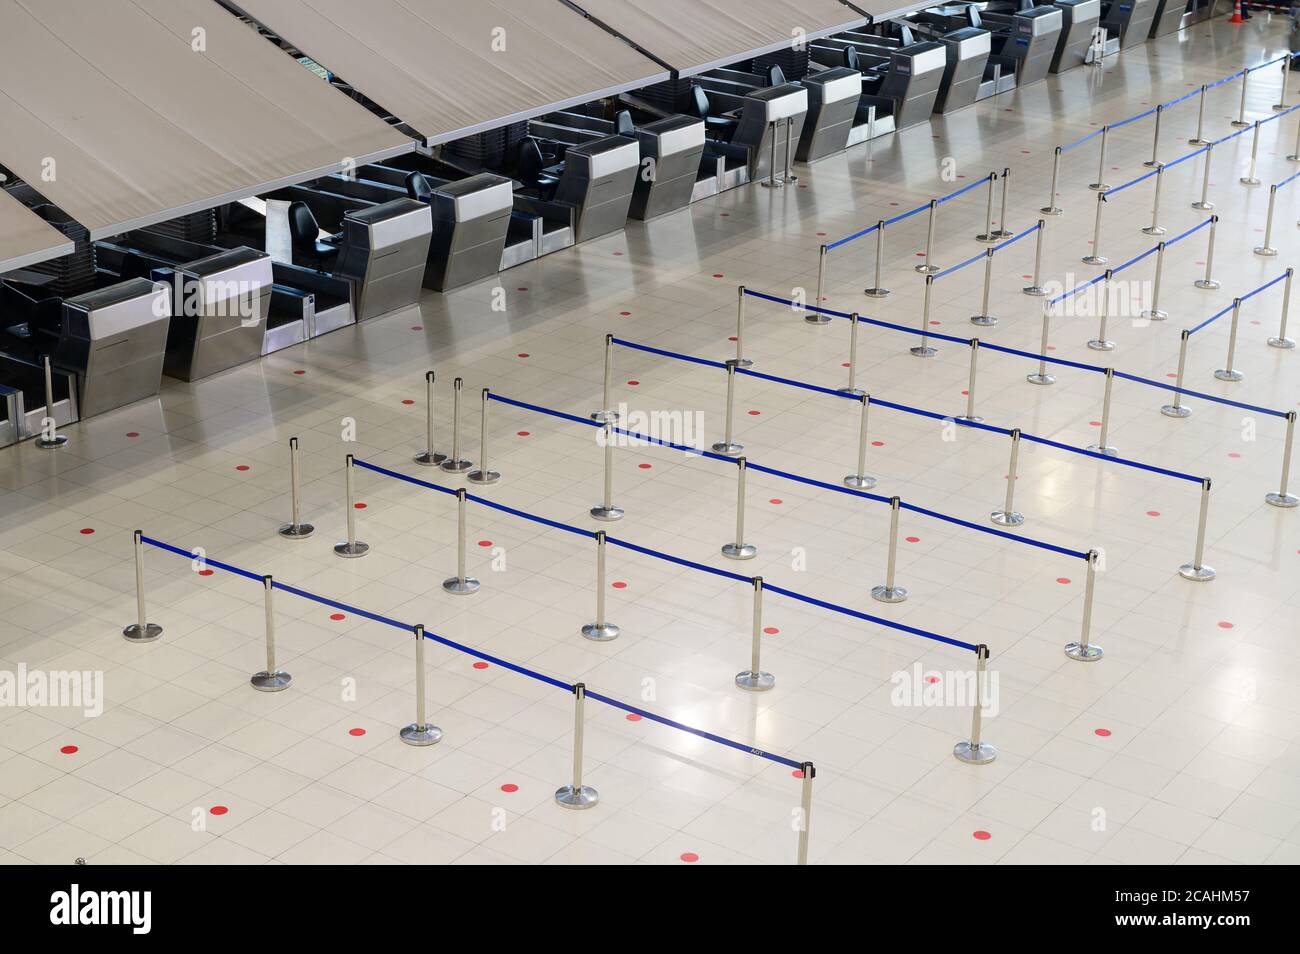 Mostrador de facturación del aeropuerto vacío con barreras de control de multitudes Foto de stock